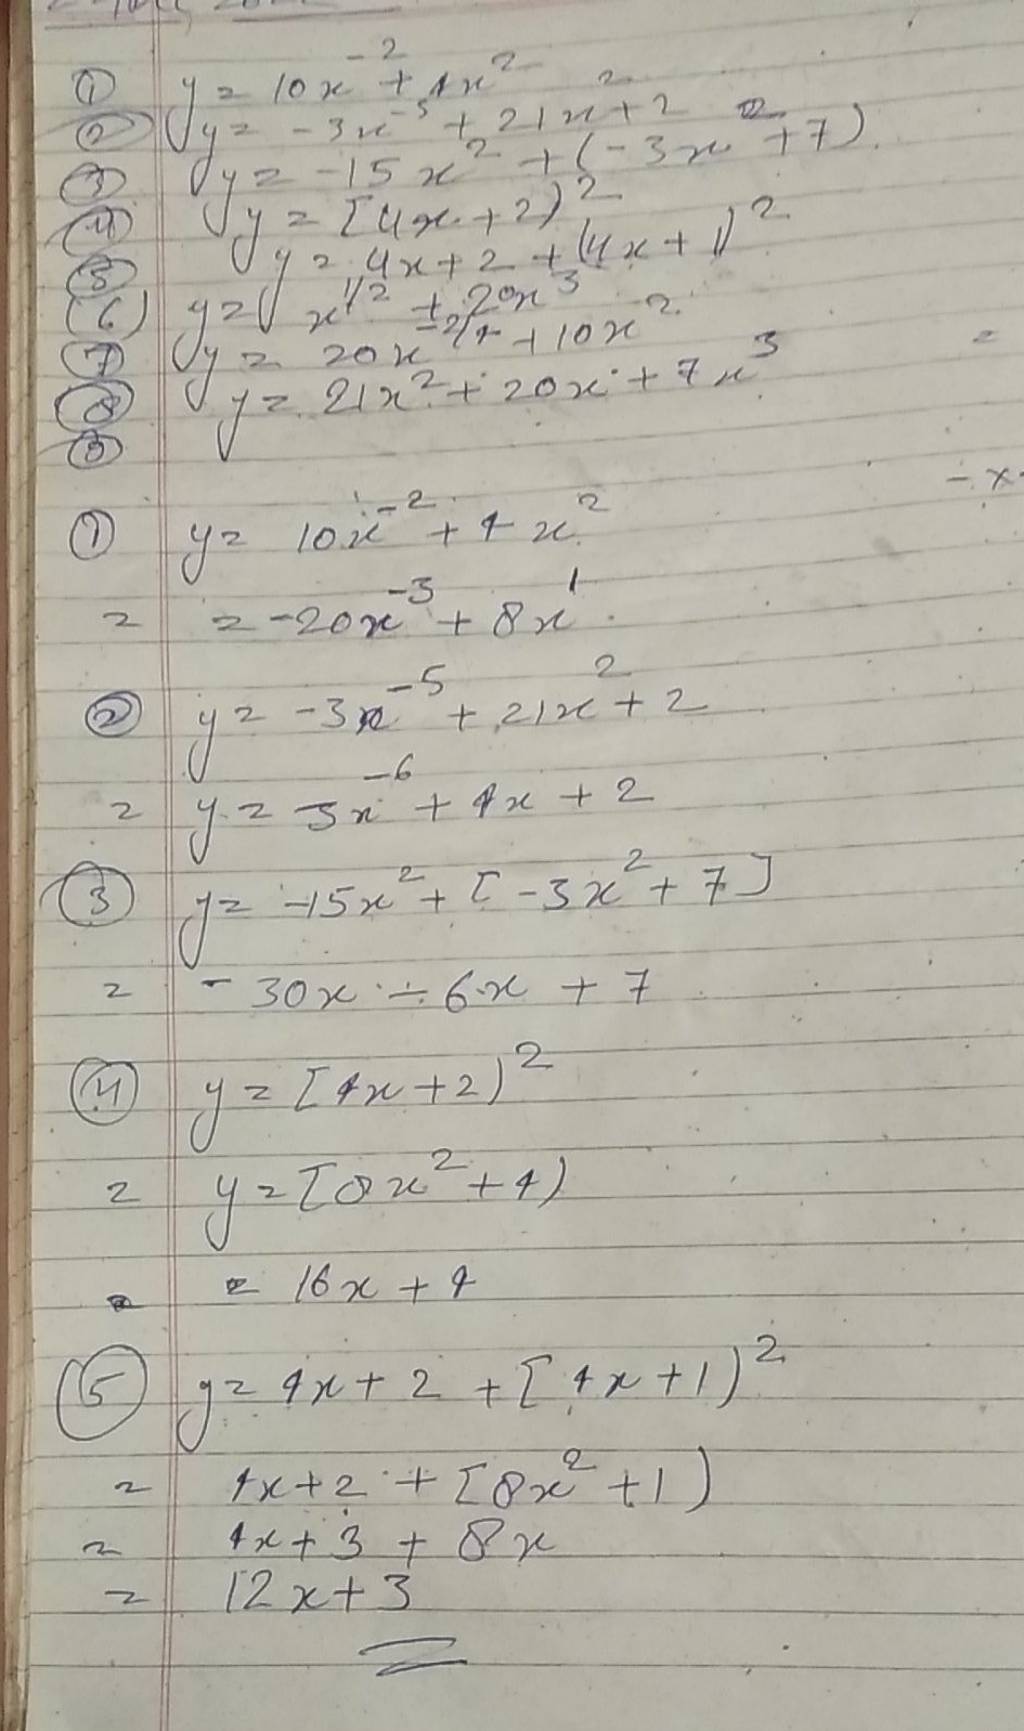 (3) y=−3x−5+21x+2 (3) y=−15x2+(−3x+7) (i) y=24x+2x2(य) y=24x+2)2 (s) y